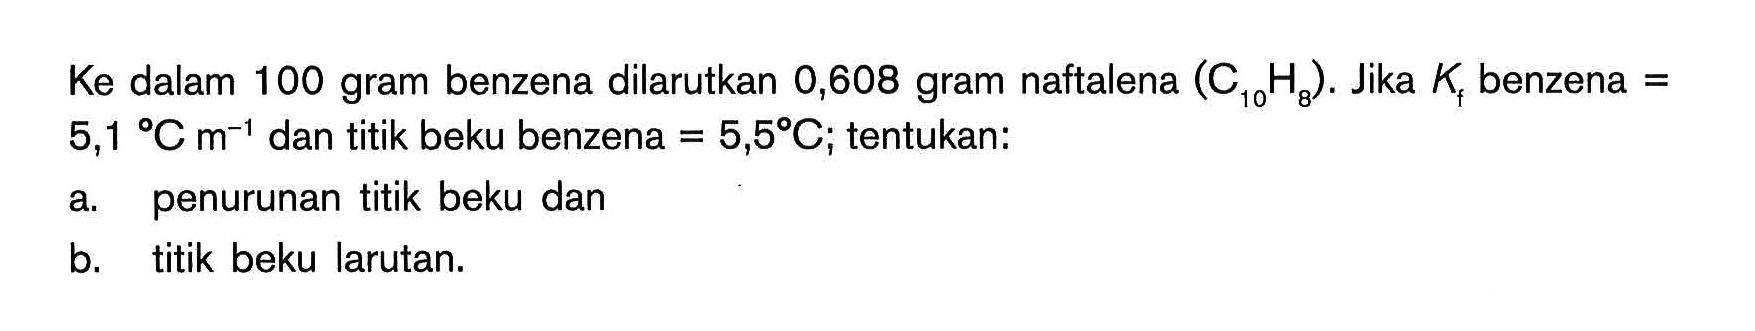 Ke dalam 100 gram benzena dilarutkan 0,608 gram naftalena (C10H8). Jika Kf benzena = 5,1C m^(-1) dan titik beku benzena = 5,5C; tentukan: a. penurunan titik beku dan b. titik beku larutan.